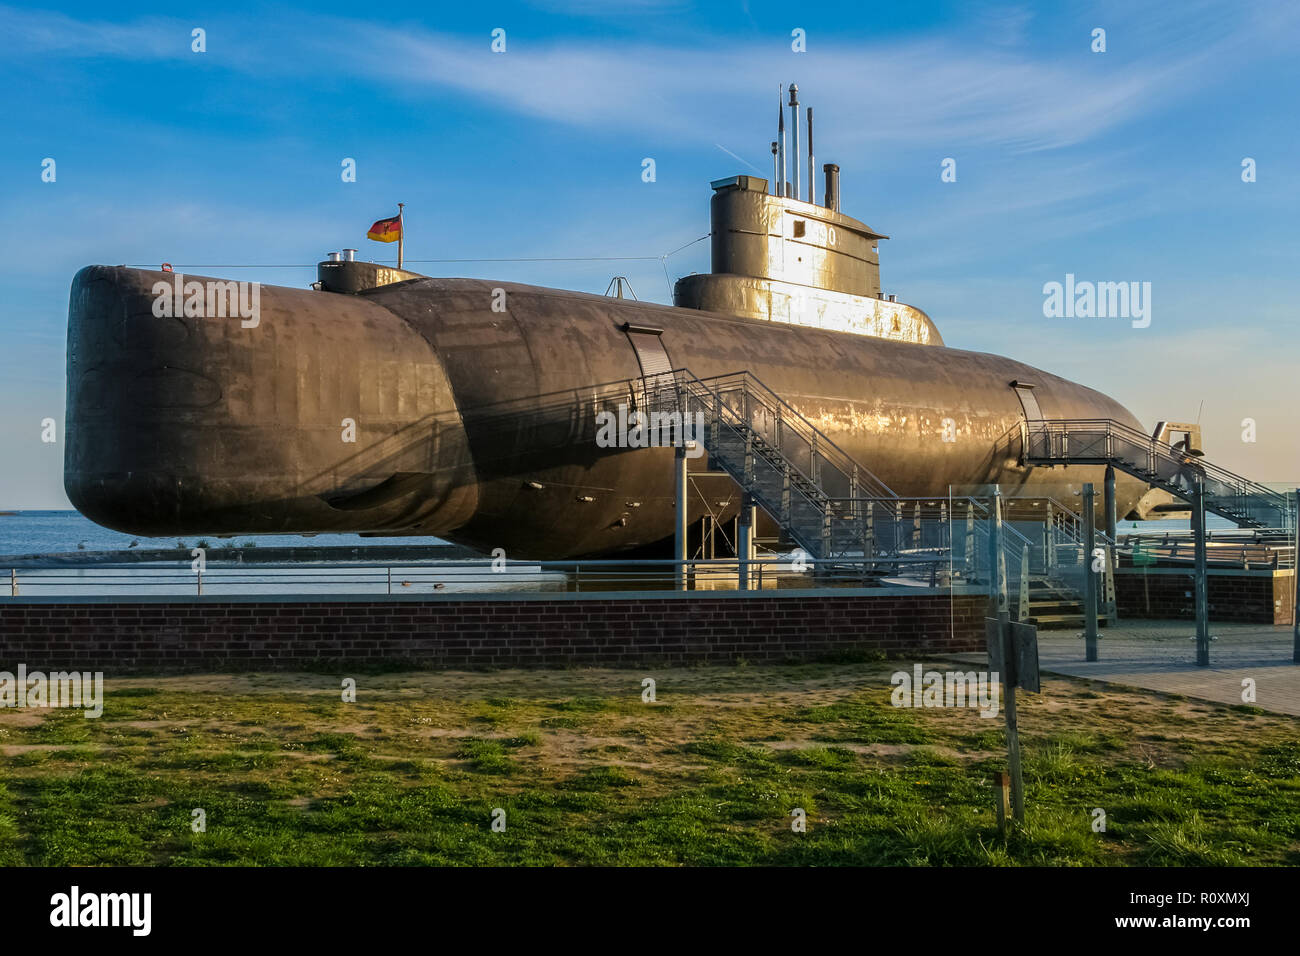 Le sous-marin allemand U-11 au U-boat museum à Burgstaaken avait le fanion de l'OTAN S190 et a été optimisé pour l'utilisation dans les eaux de la mer Baltique. Banque D'Images